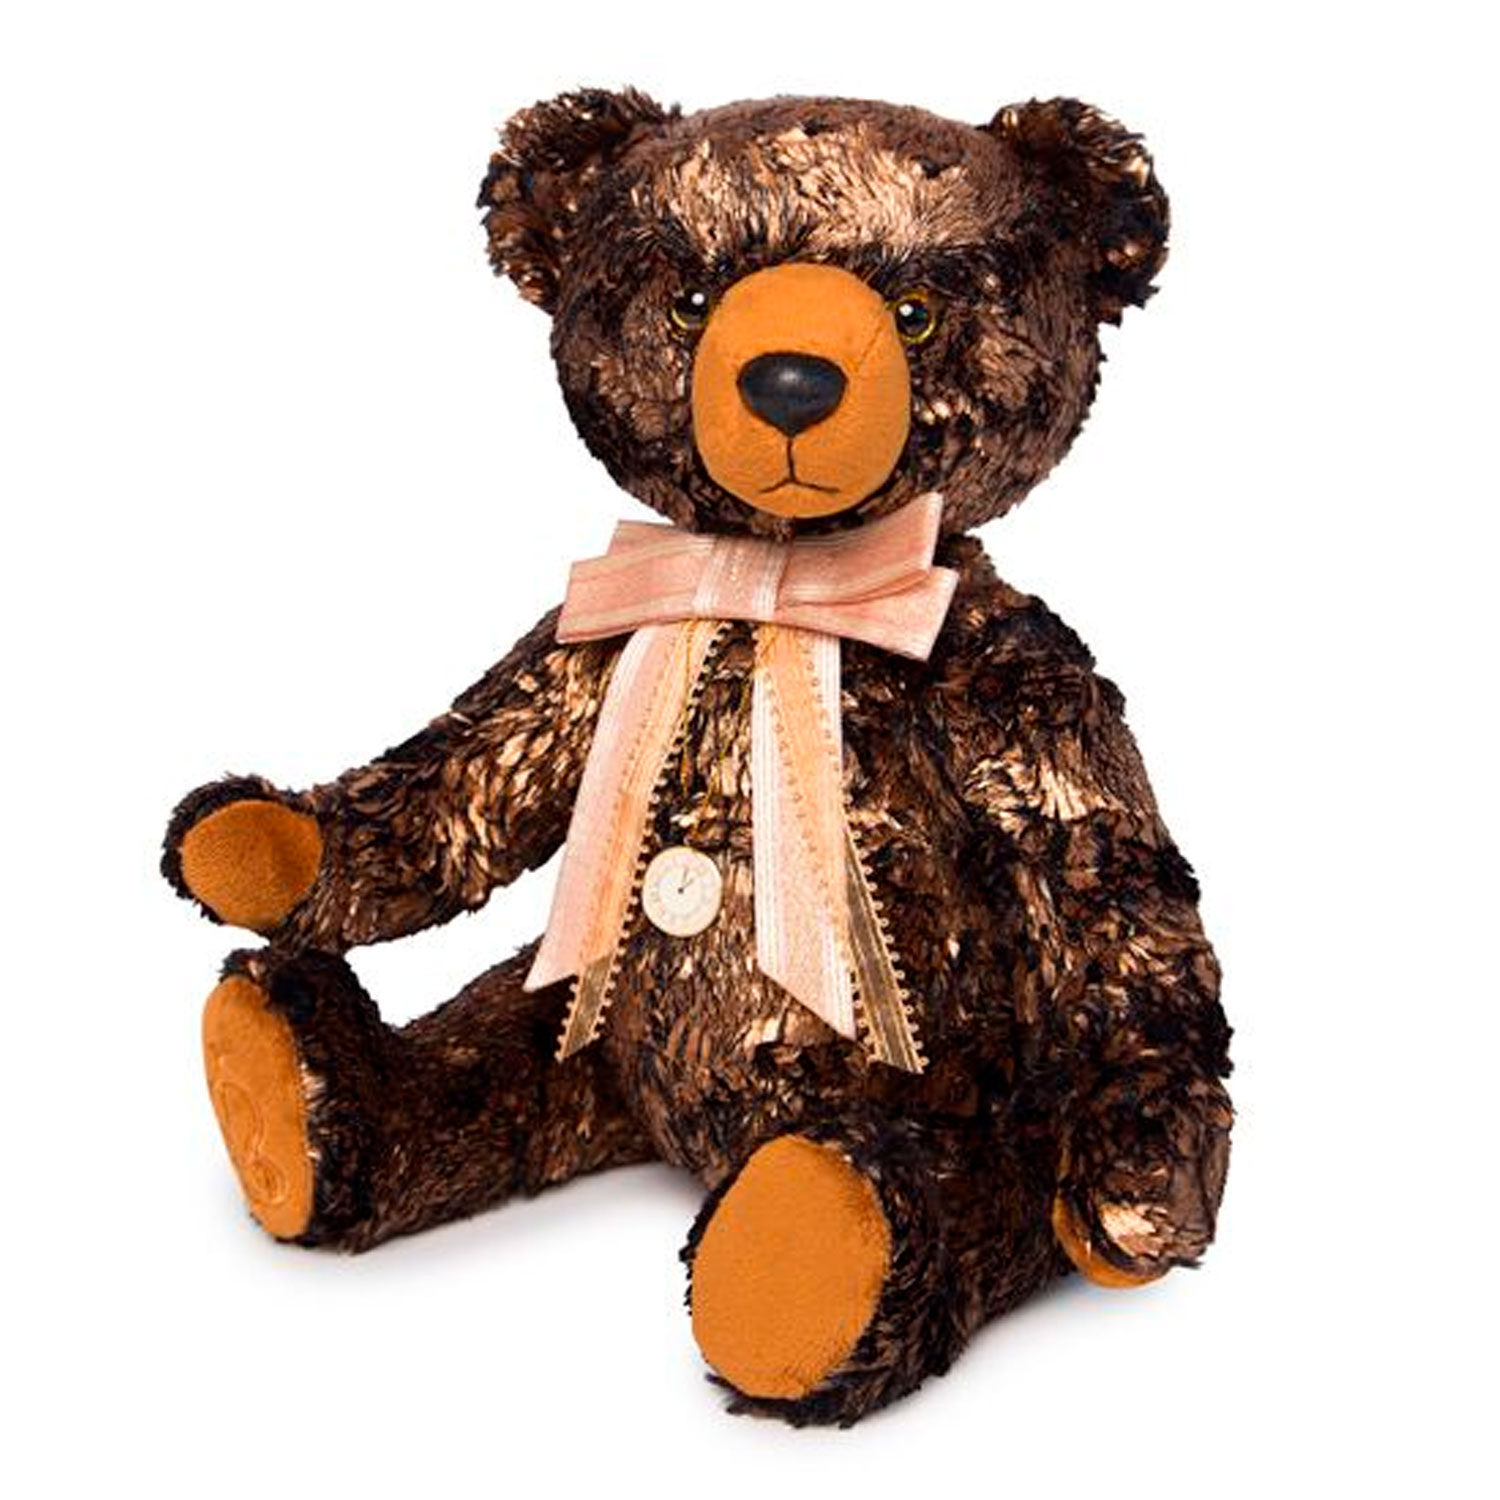 Медведь басс. Мягкая игрушка Bernart медведь золотой 30 см. Медведь БЕРНАРТ золотой. Budi basa медведь Бернард. Мишка Бернард буди баса.